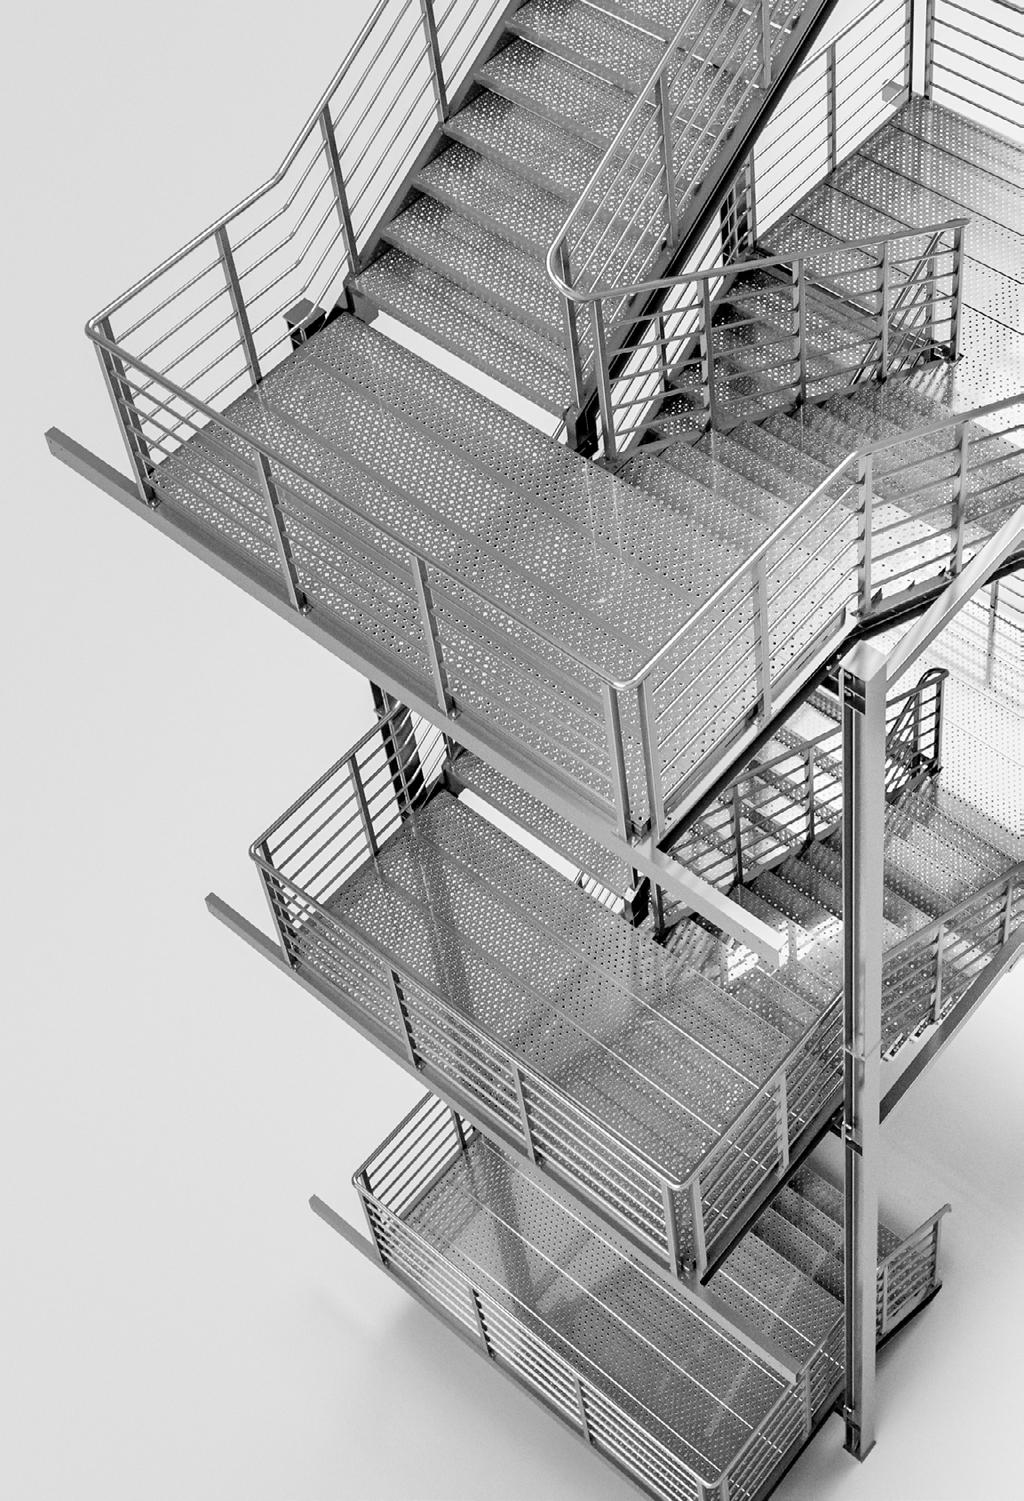 rchitectural Metalwork SCHODY EWKUCYJNE 0,5 0,5 2 Główne zastosowanie to droga ewakuacji w budynkach użyteczności publicznej i budownictwie wielorodzinnym jako schody zewnętrzne lub wewnętrzne r =